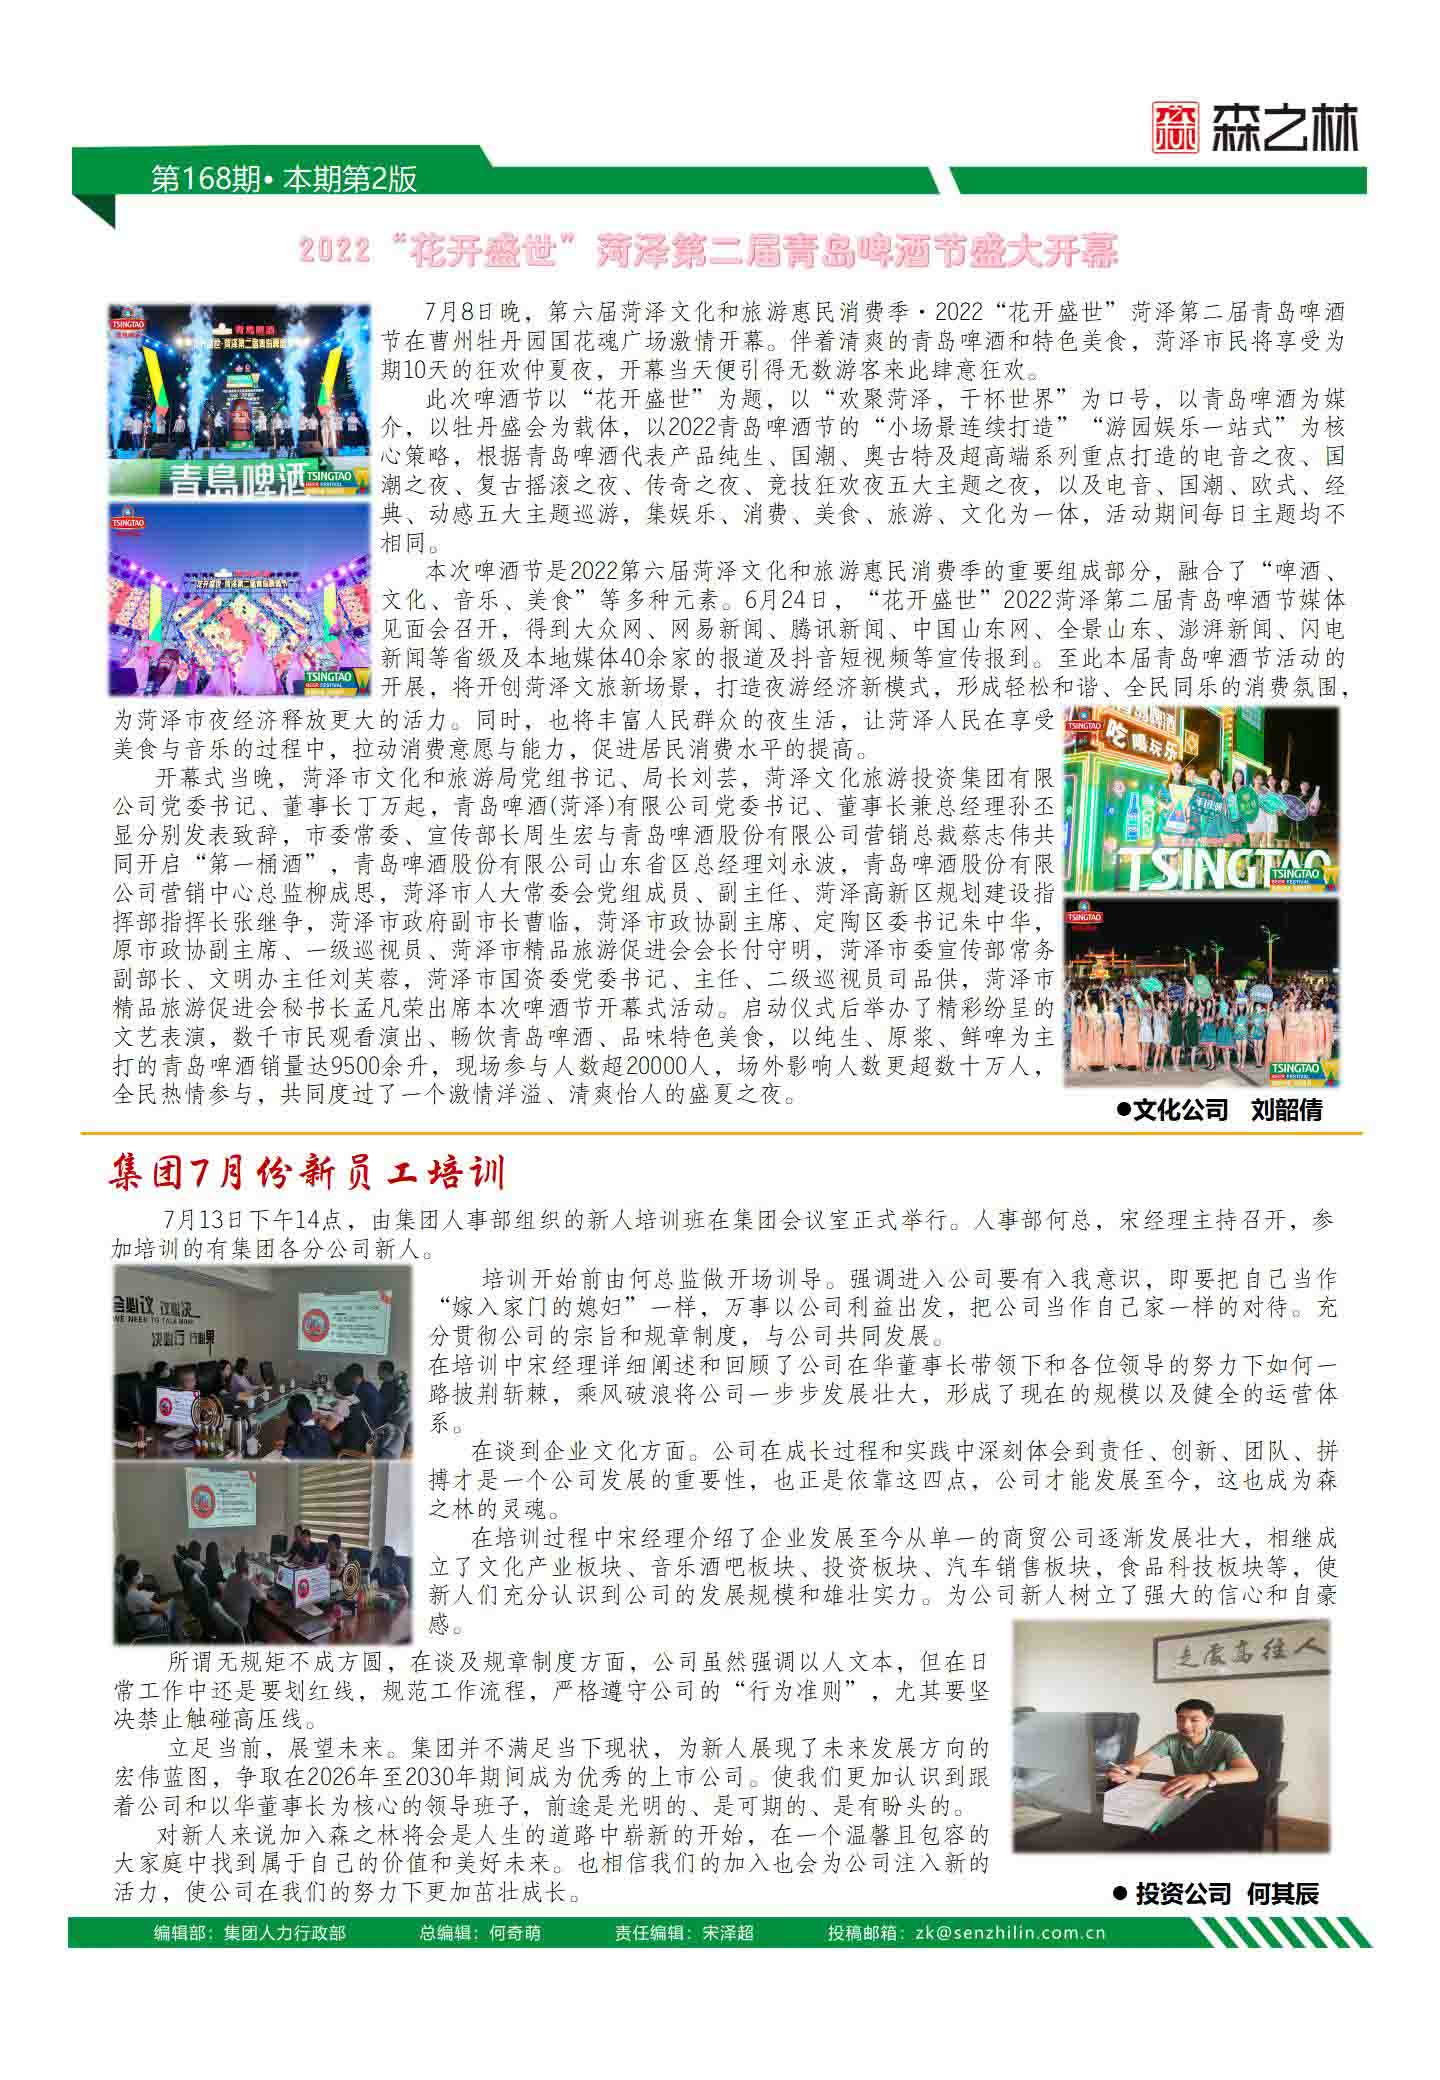 企业周刊168期_02 副本.JPG